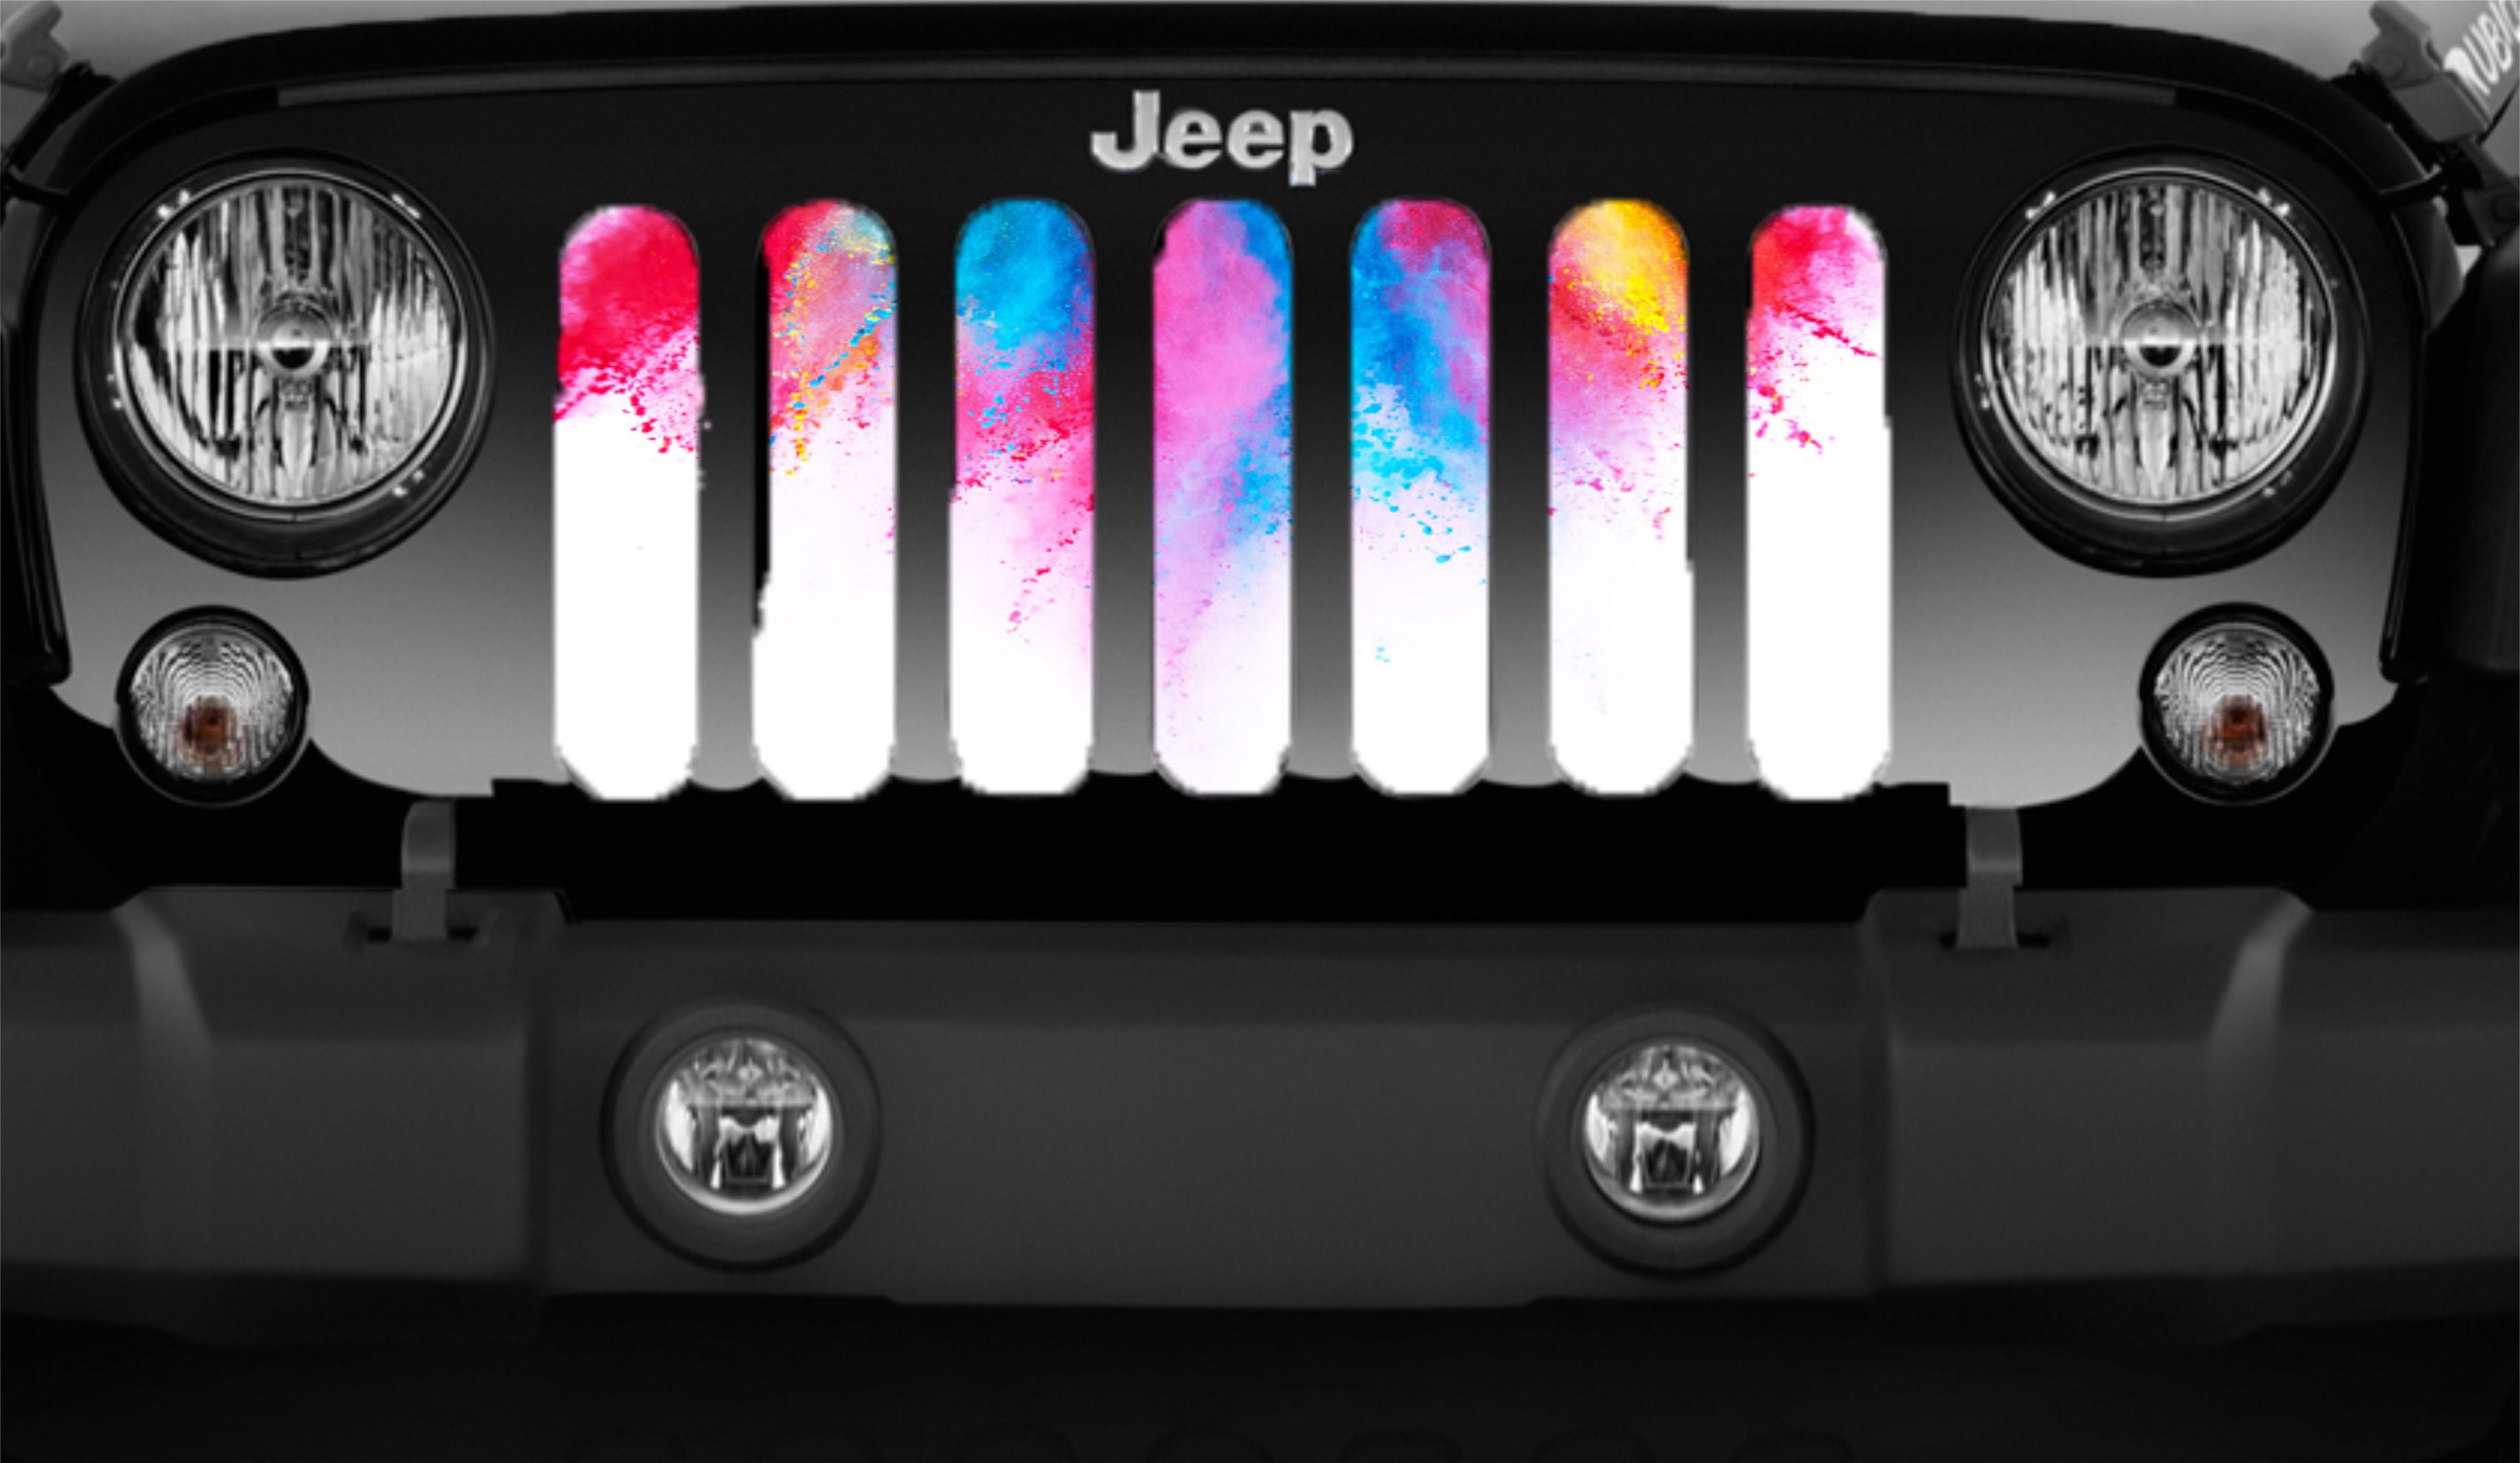 Splash of Color Jeep Grille Insert